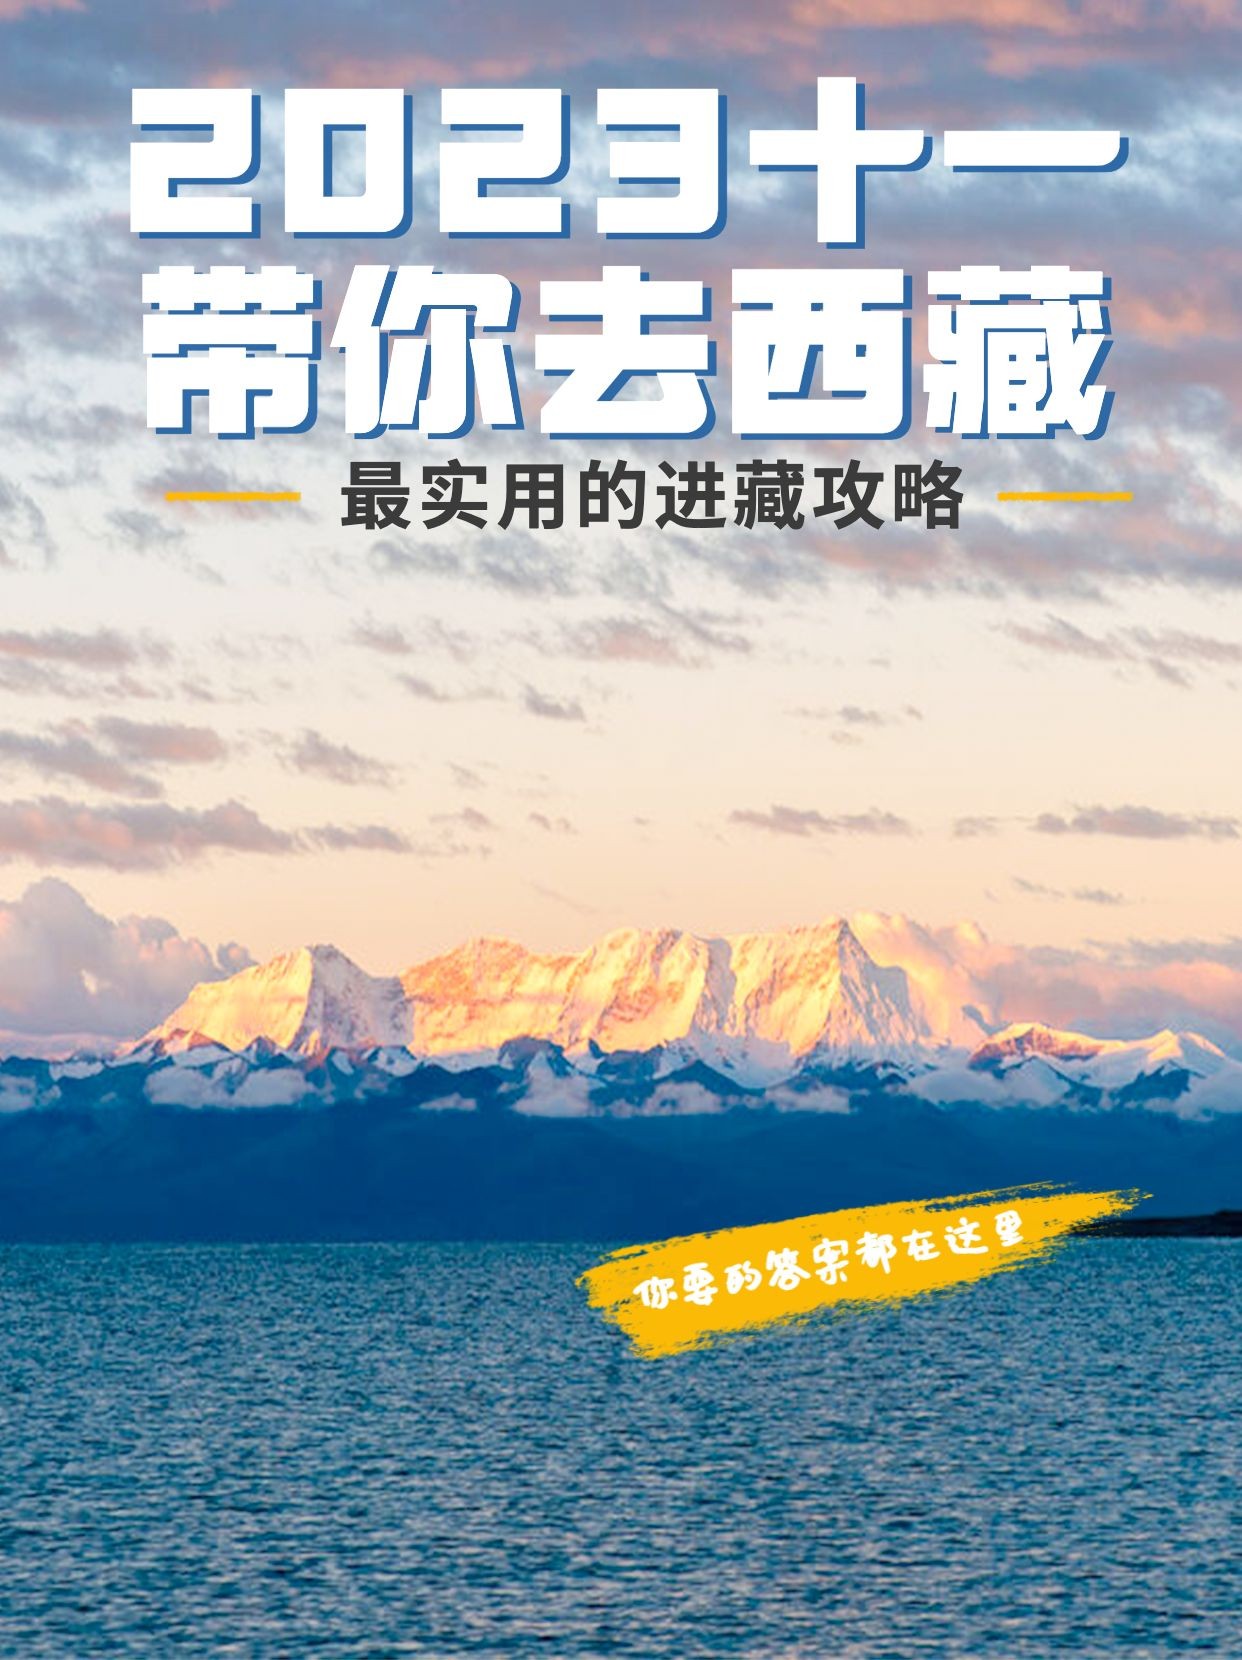 旅游国庆十一西藏攻略小红书封面预览效果